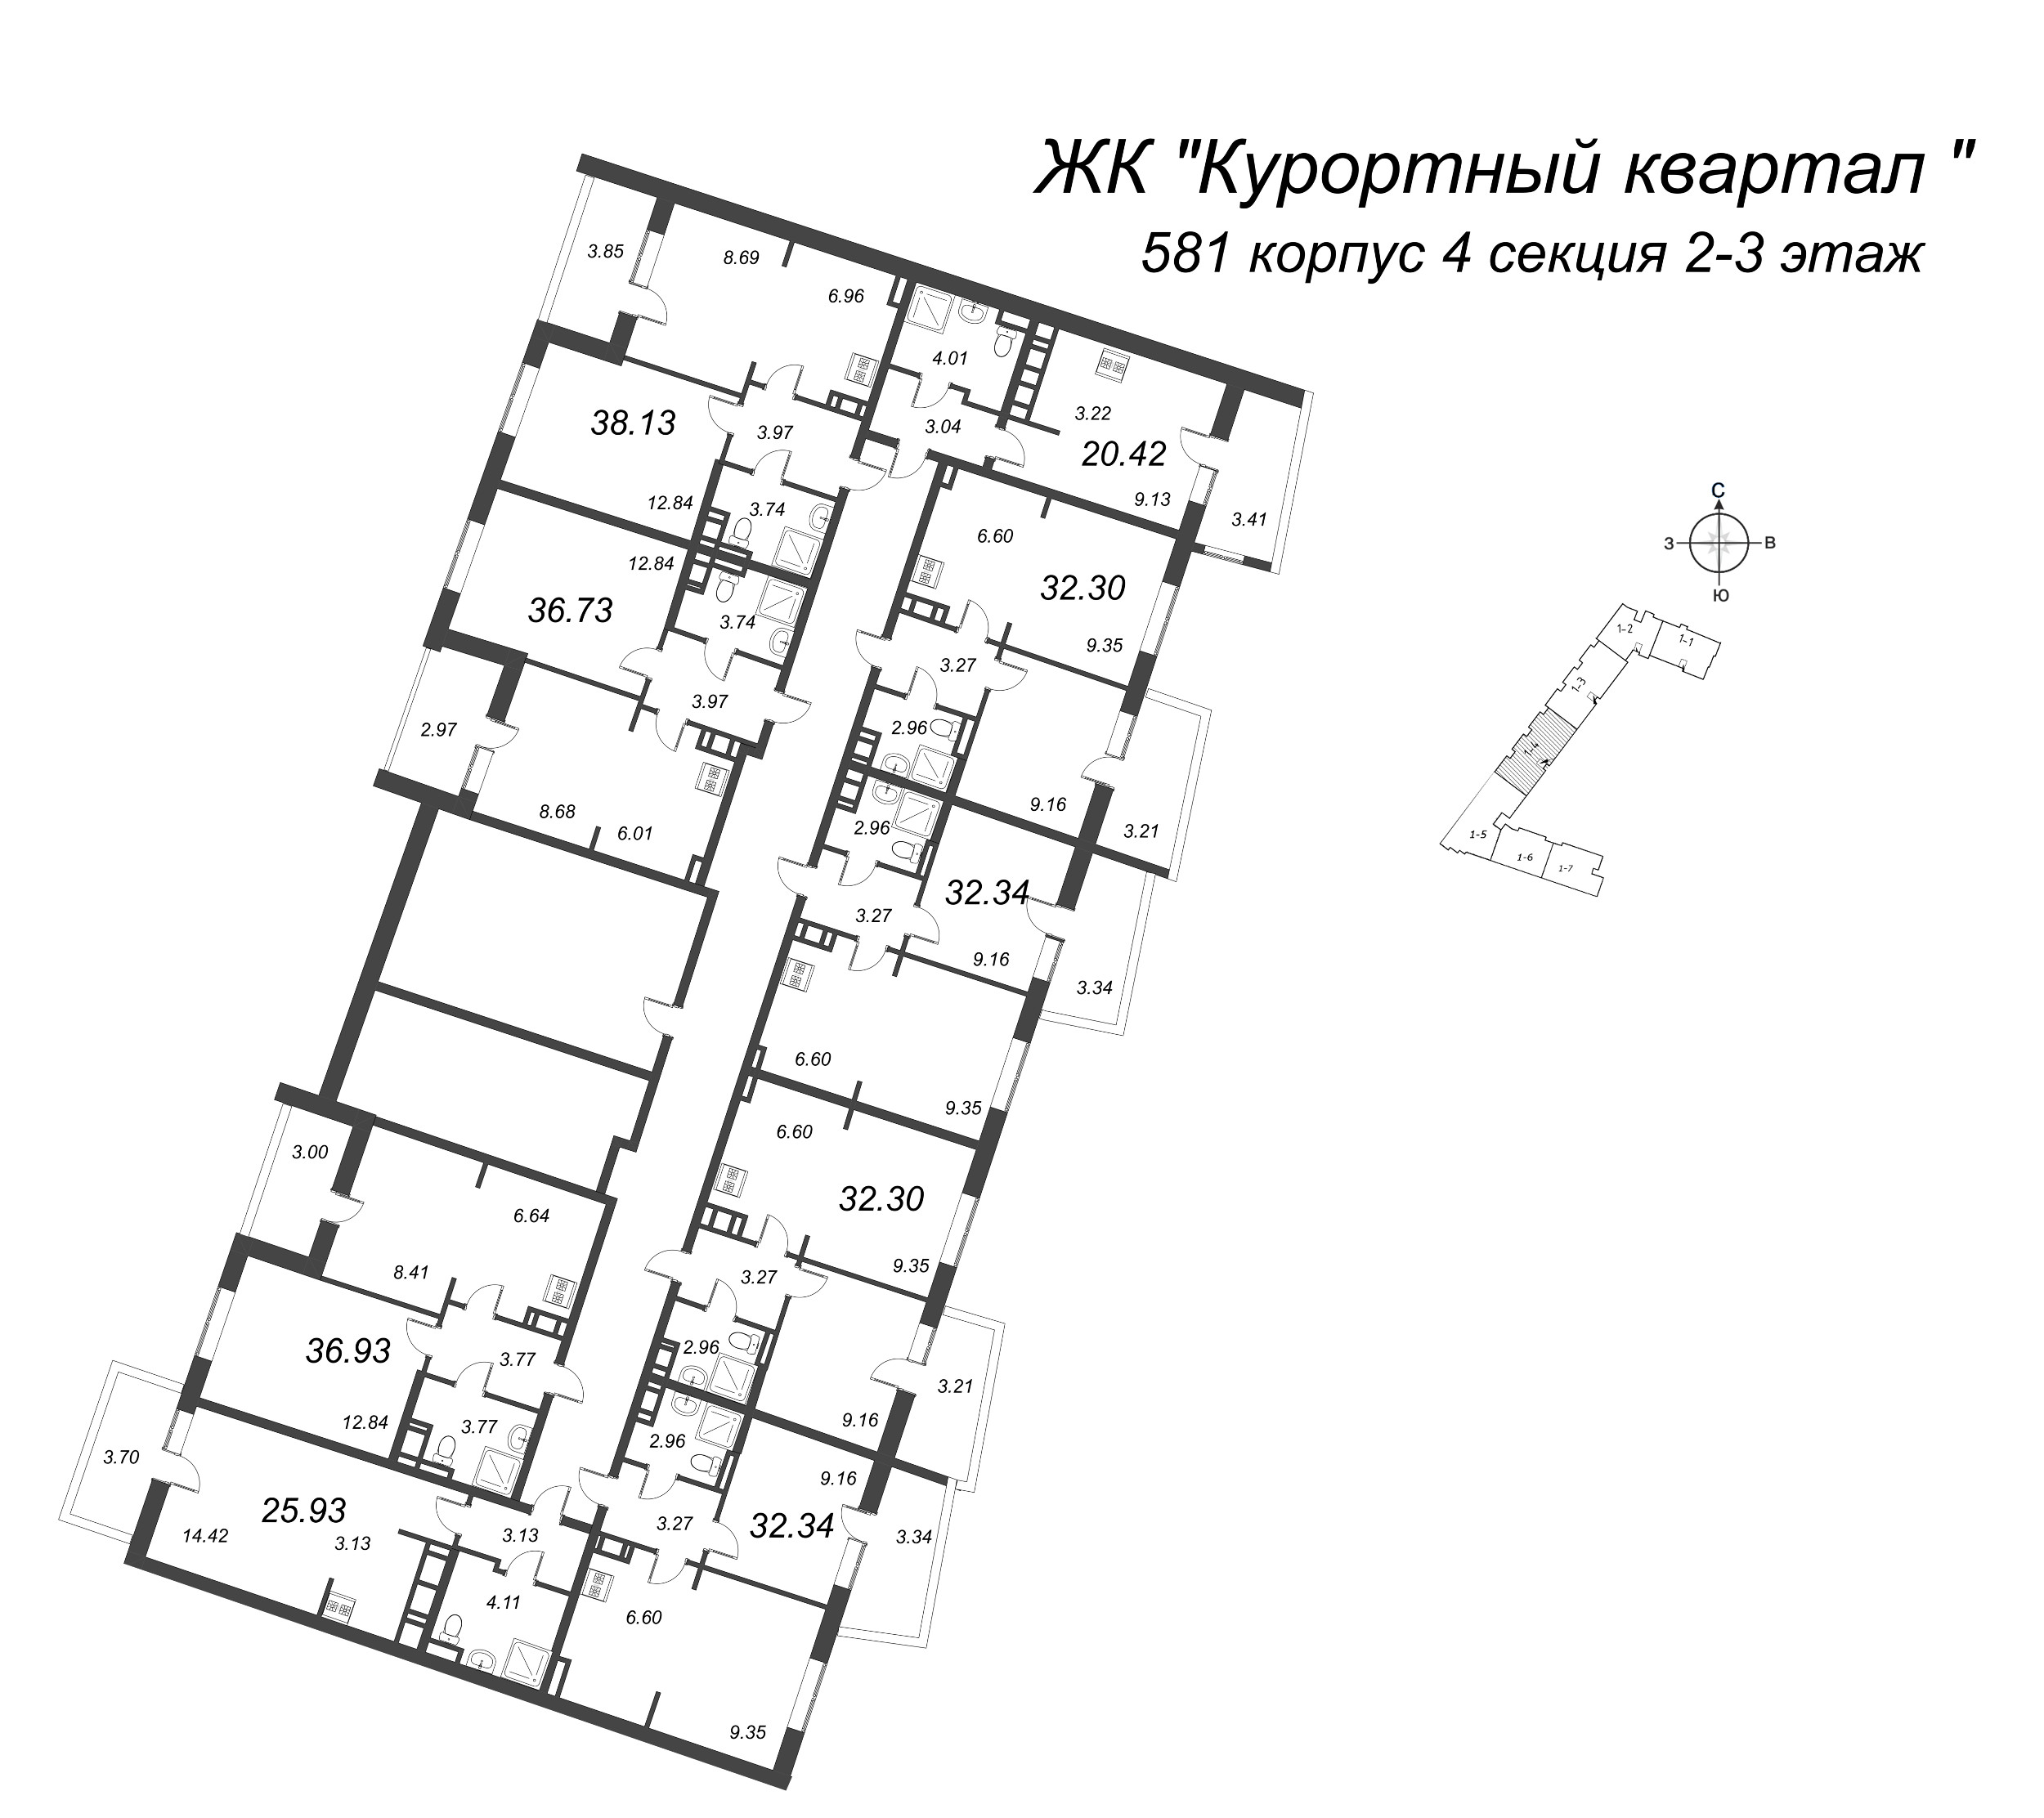 2-комнатная (Евро) квартира, 32.3 м² в ЖК "Курортный Квартал" - планировка этажа